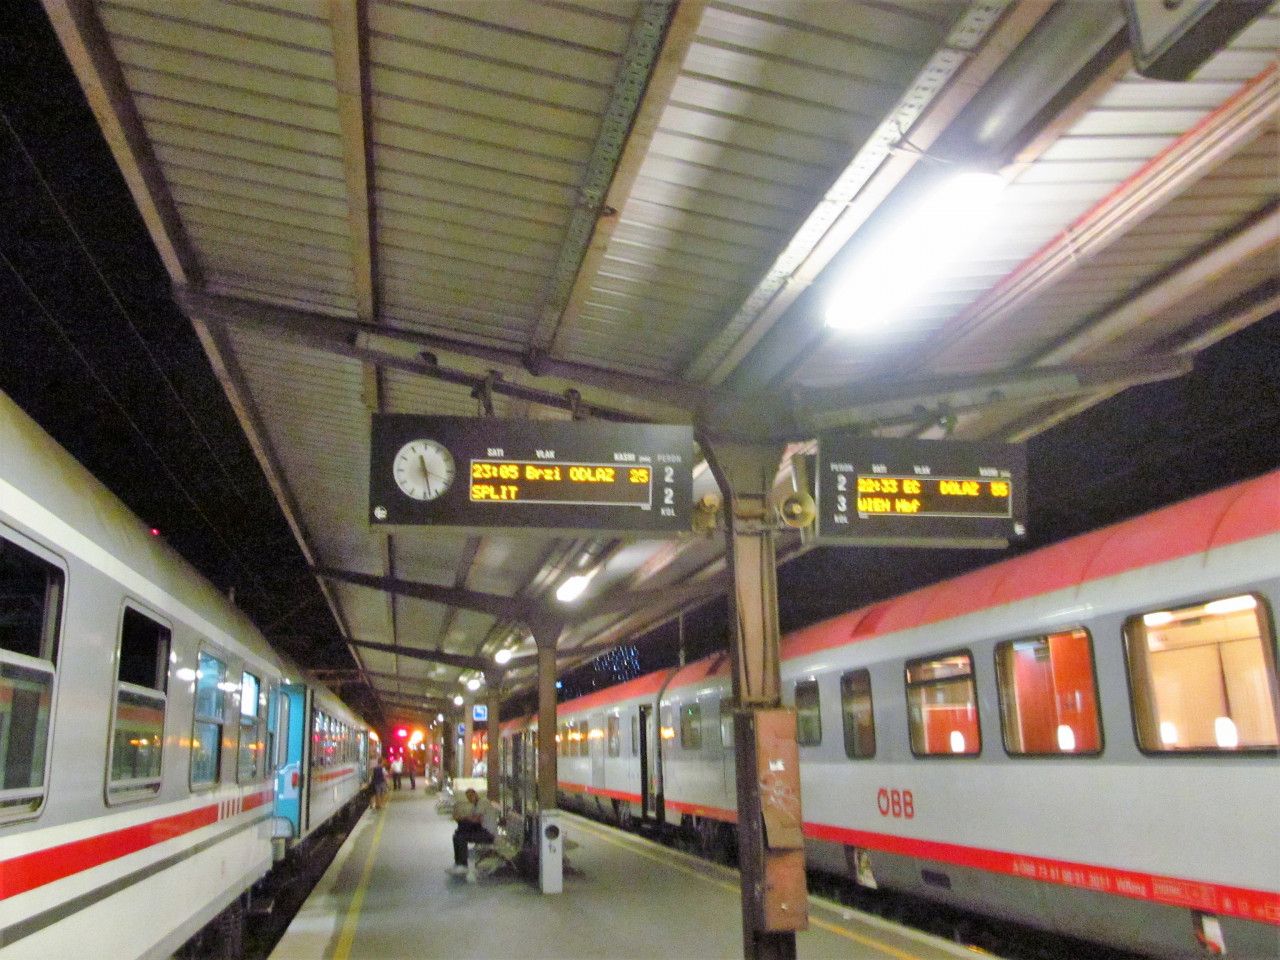 EC z Vdn se skoro +1h, ale non vlak smr Split v Zagrebu hl. kolodv. pokal +25min.!